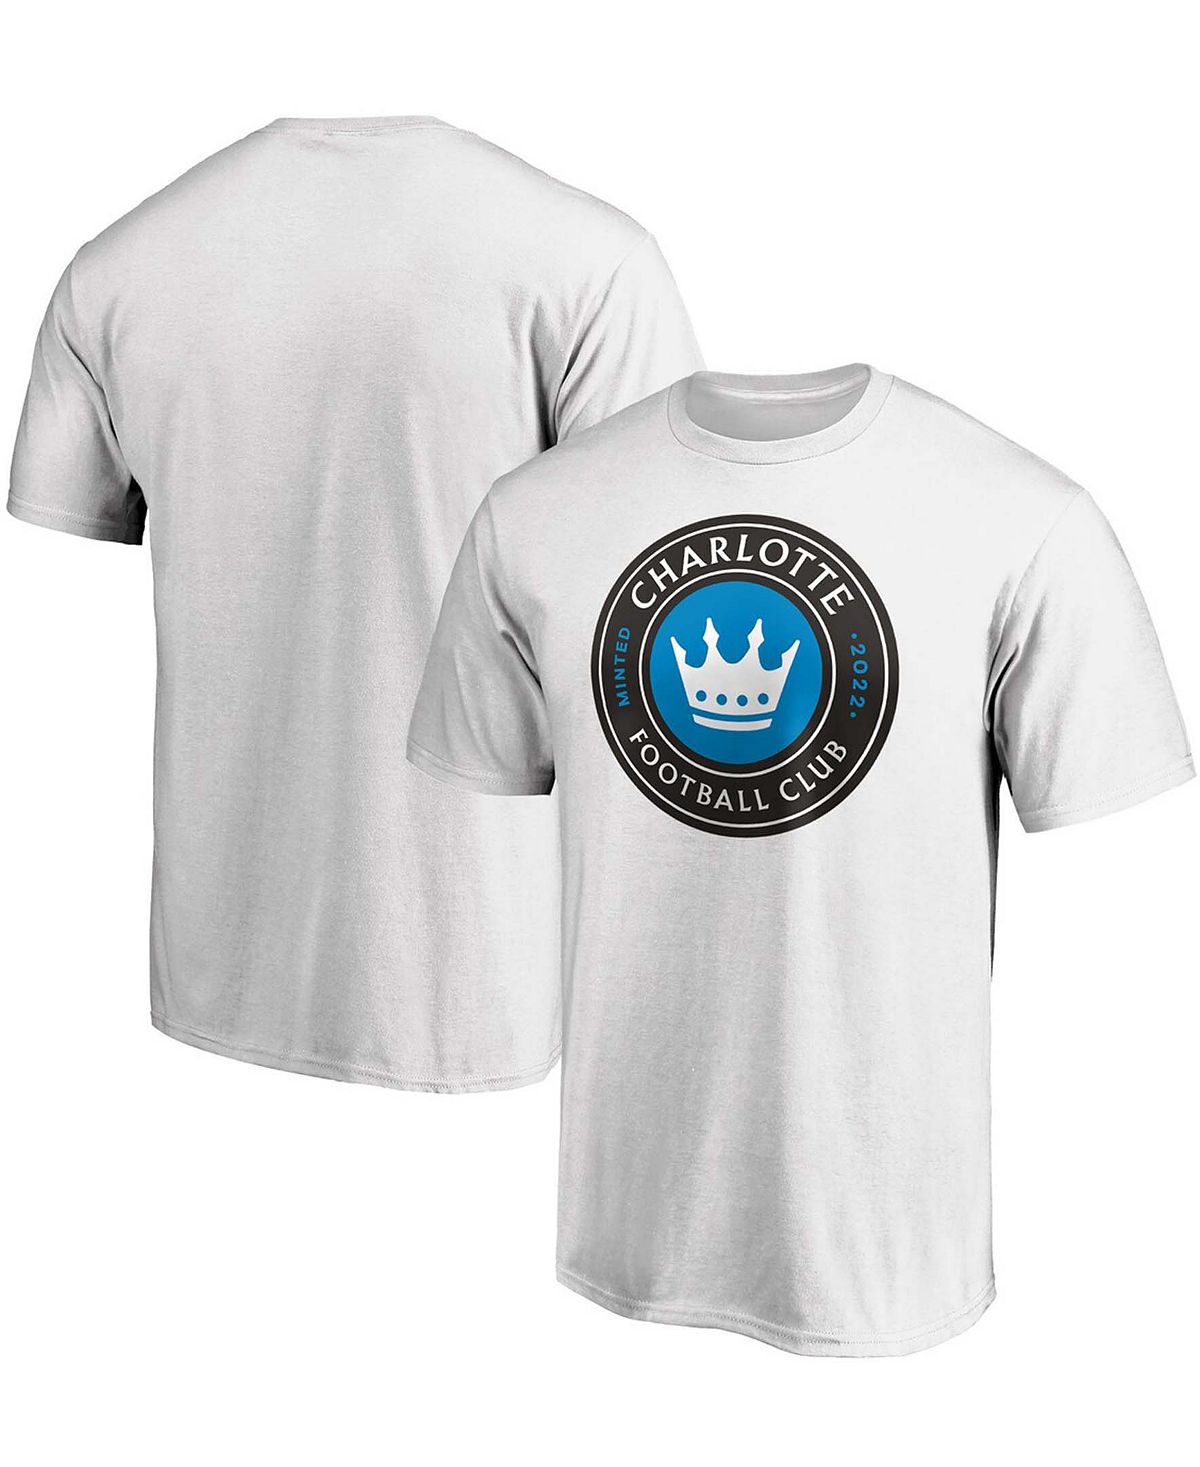 Мужская белая футболка с логотипом Charlotte FC Primary Team Fanatics металлический медаль для футбольного матча золотистый и серебристый бронзовый клуб спортивный соревнование с завода в дошкольном саду 2021